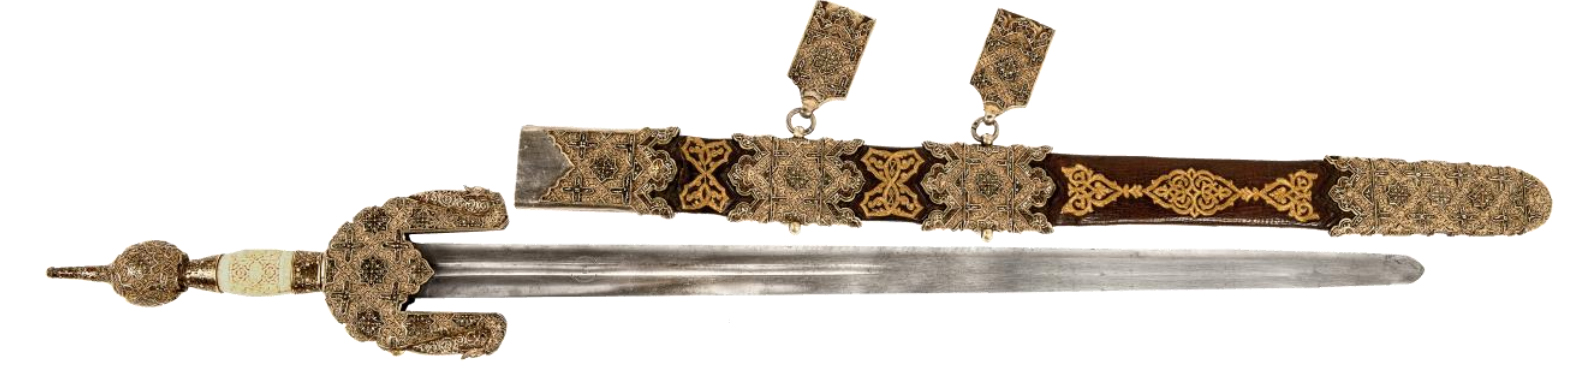 Espada y funda de Jineta Nazarí Boabdil el Chico (siglo XV)